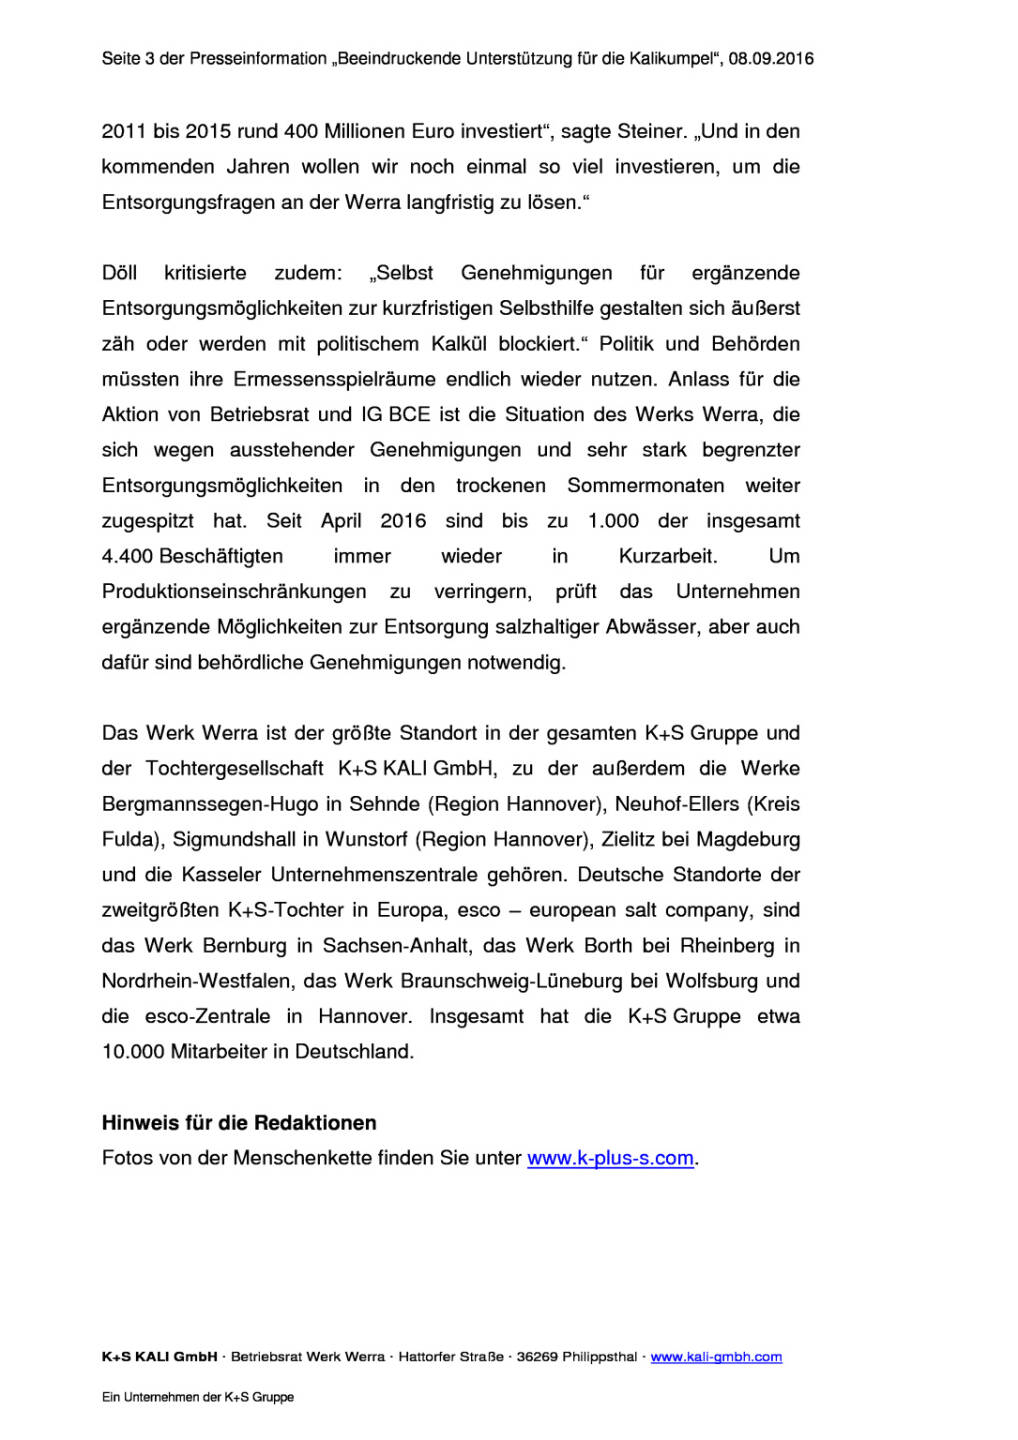 K+S AG Betriebsrat: Menschenkette im Werratal, Seite 3/4, komplettes Dokument unter http://boerse-social.com/static/uploads/file_1751_ks_ag_betriebsrat_menschenkette_im_werratal.pdf